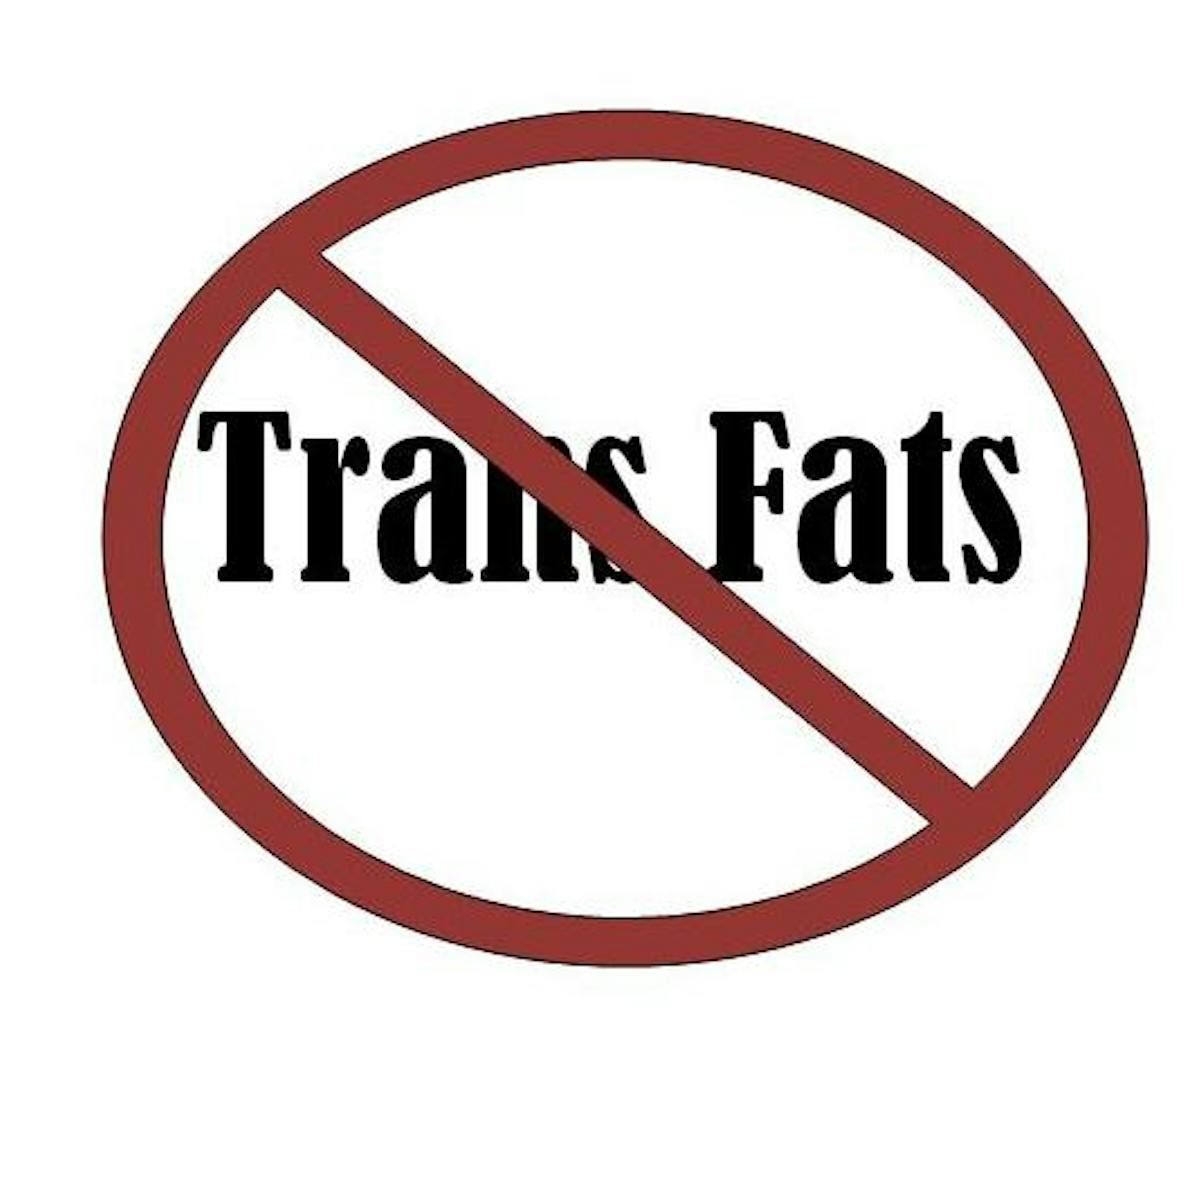 No Trans Fats